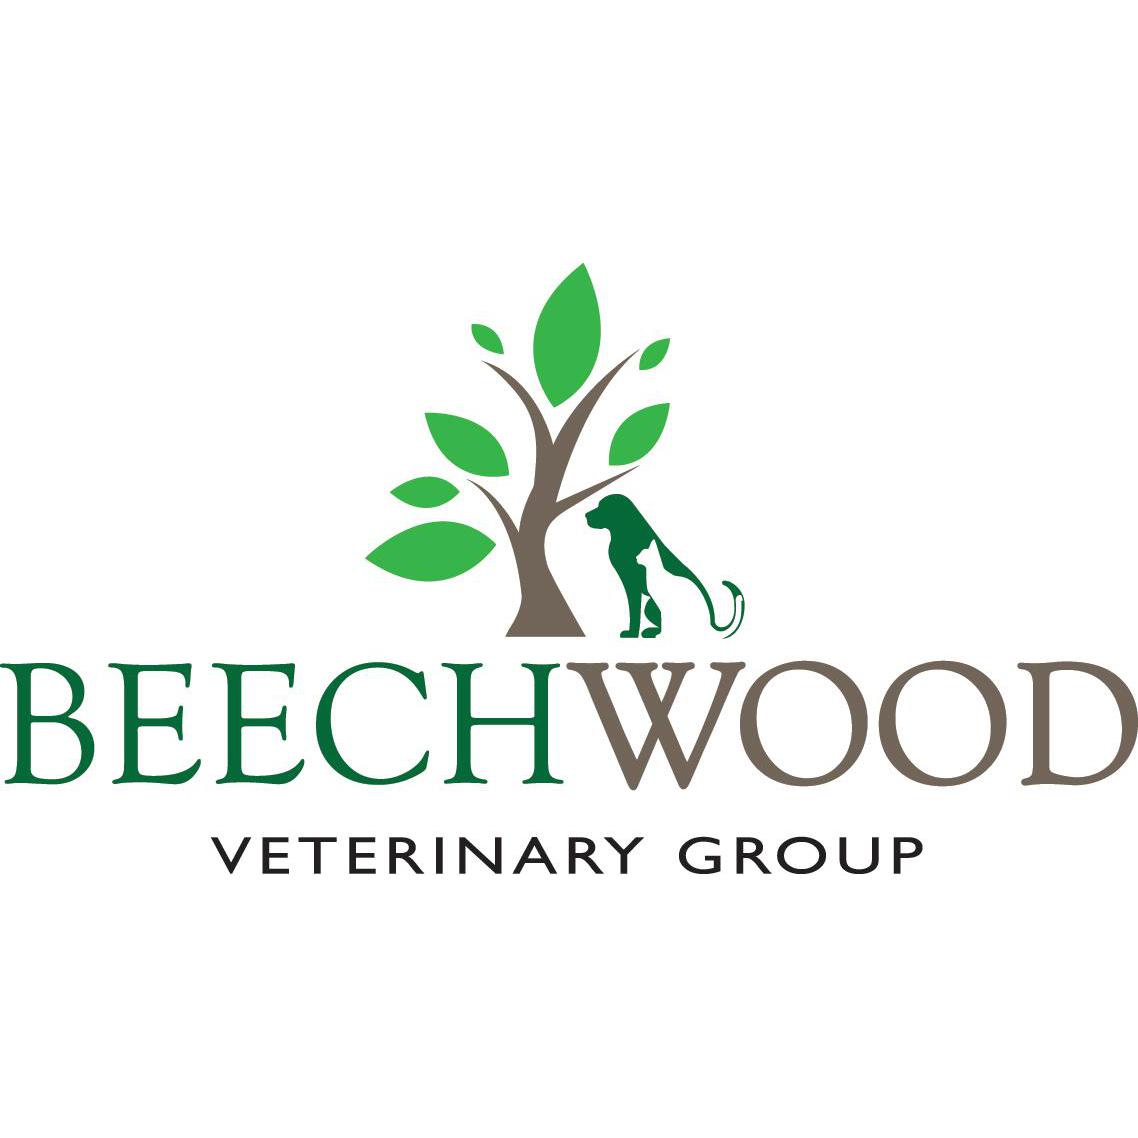 Beechwood Veterinary Group, Chapel Allerton Leeds 01132 621189